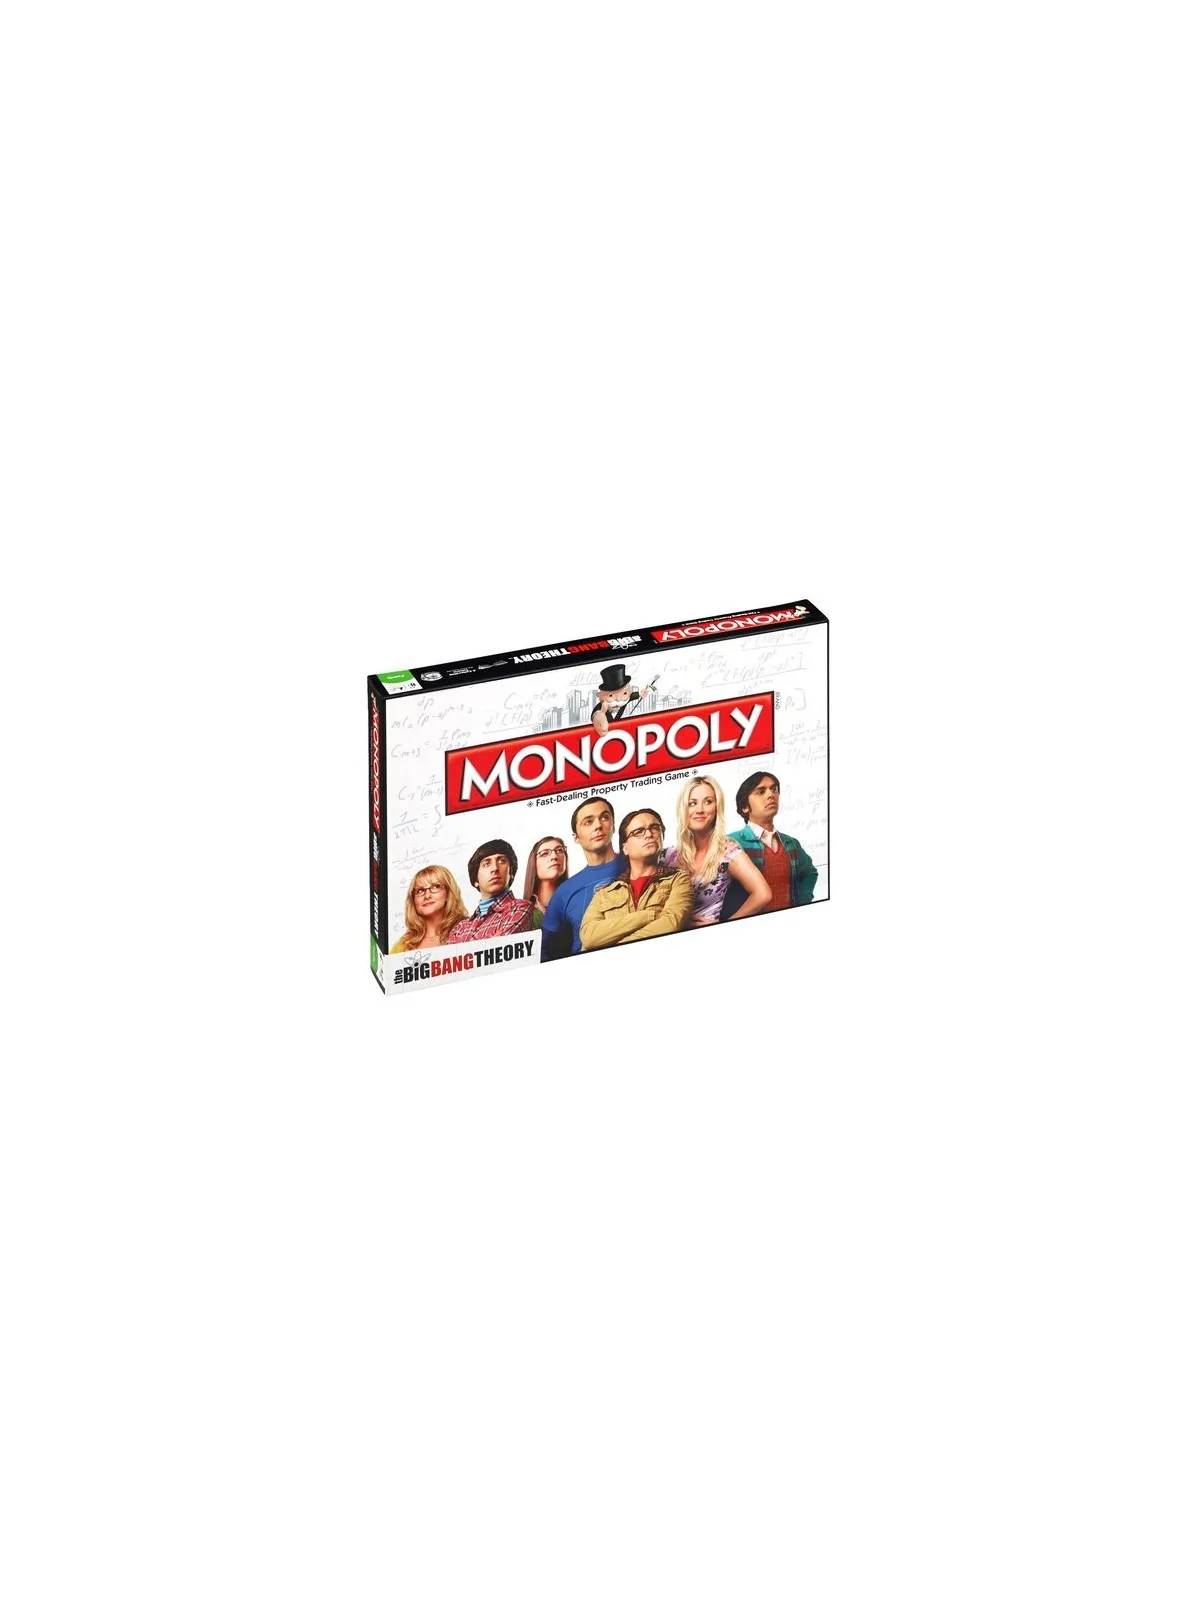 Comprar Monopoly: The Big Bang Theory barato al mejor precio 35,96 € d